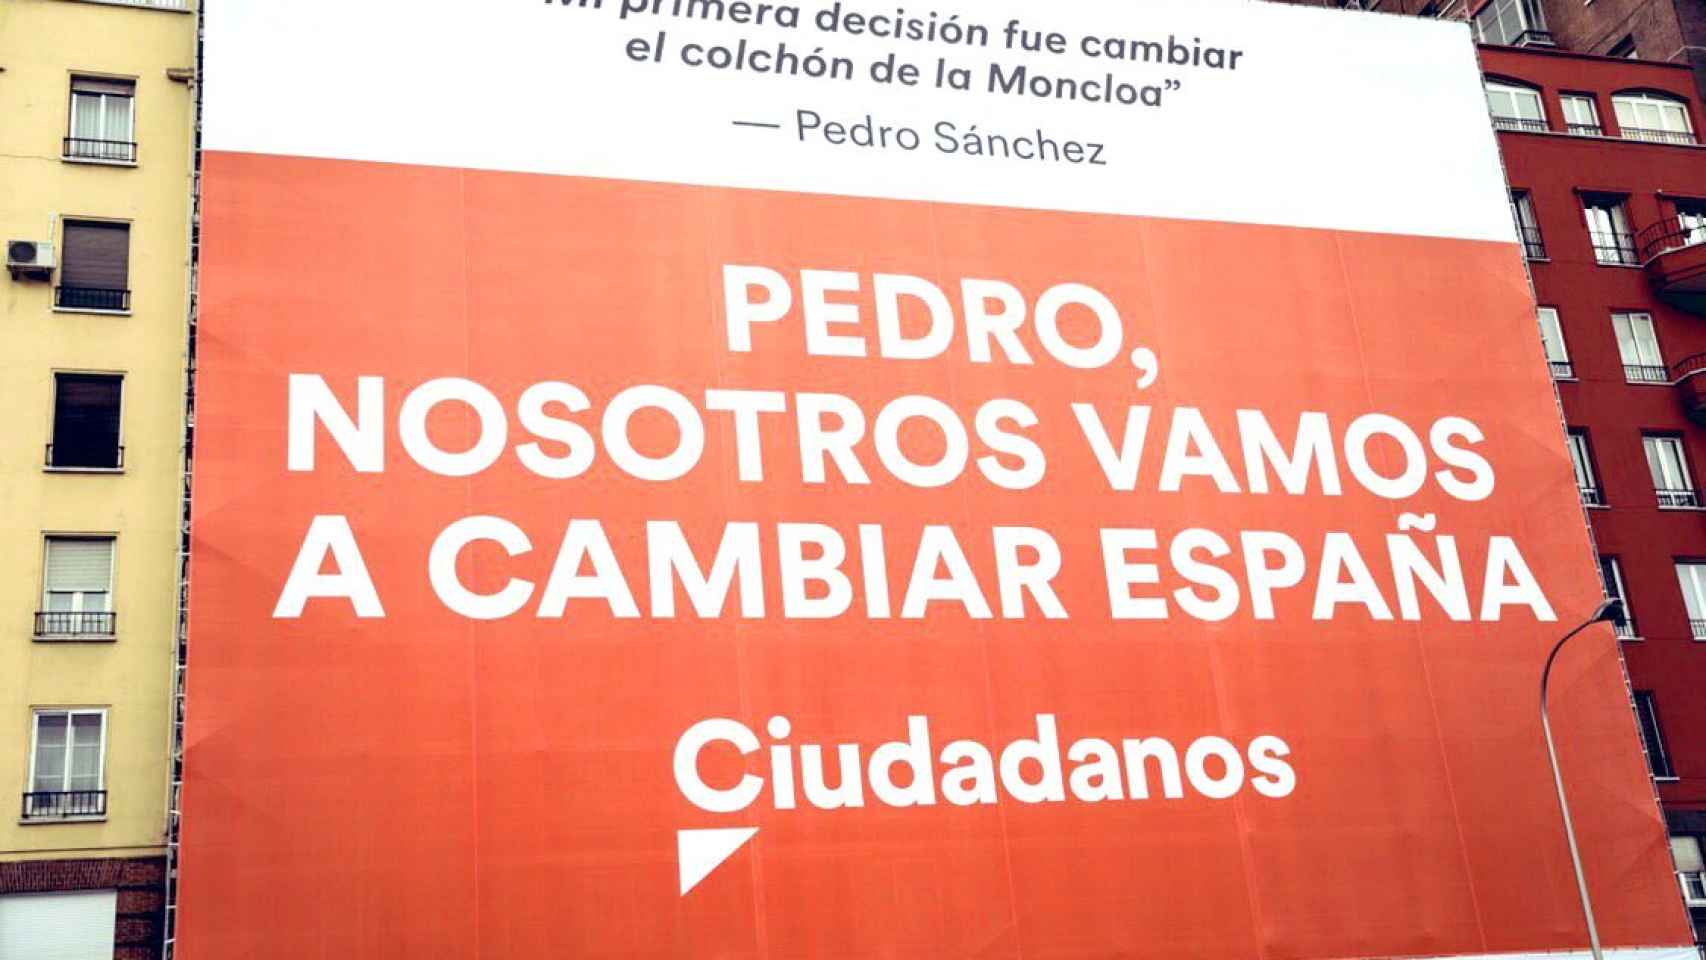 El cartel ocupa por completo la fachada de un edificio del centro de Madrid.